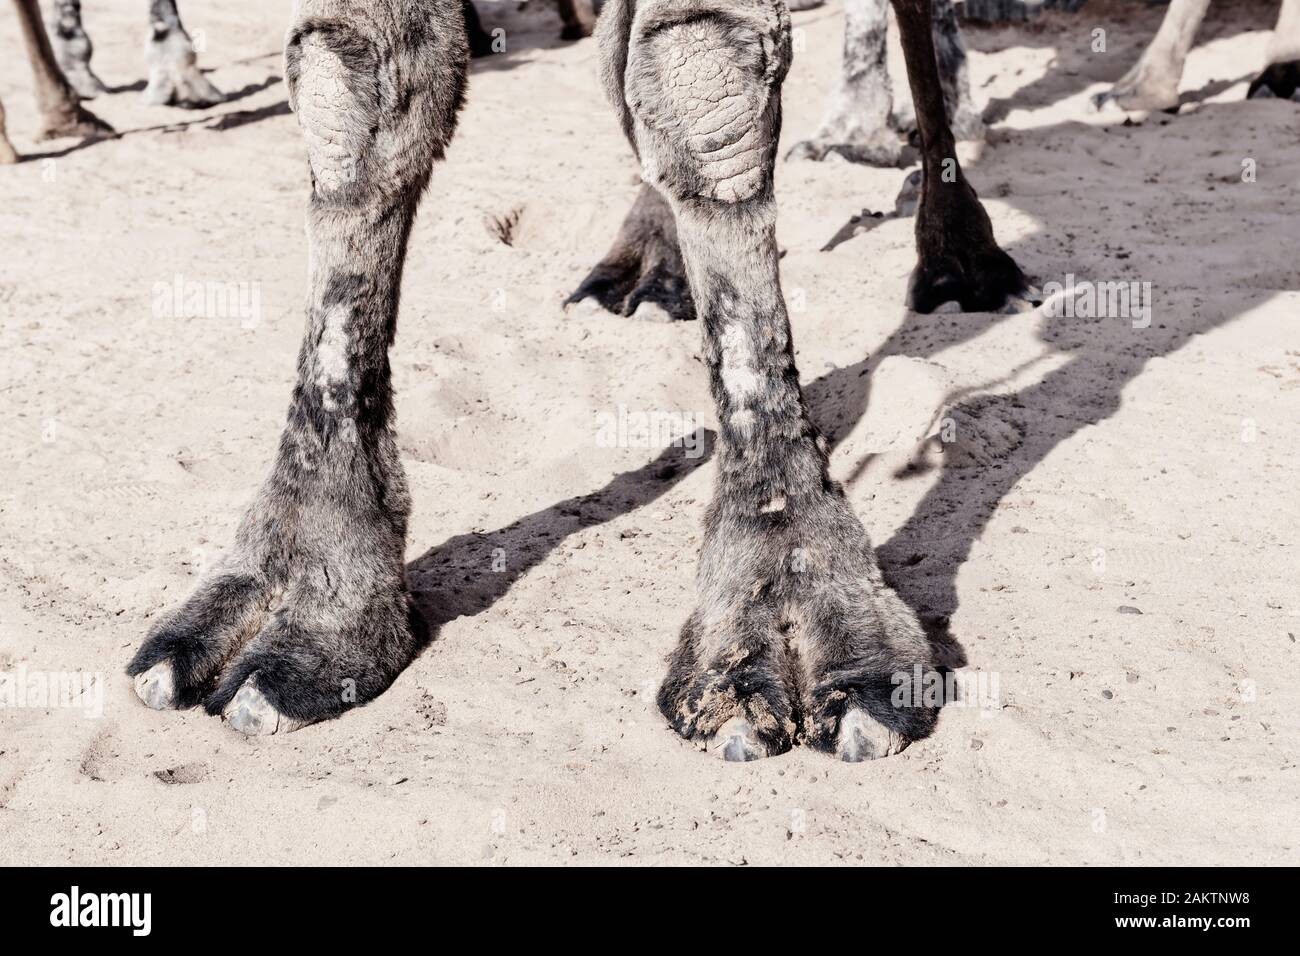 Forelegs di un cammello (dromedary) che mostra il duro clima di lavoro dell'animale. Immagine chiave alta con colori silenziati. Foto Stock